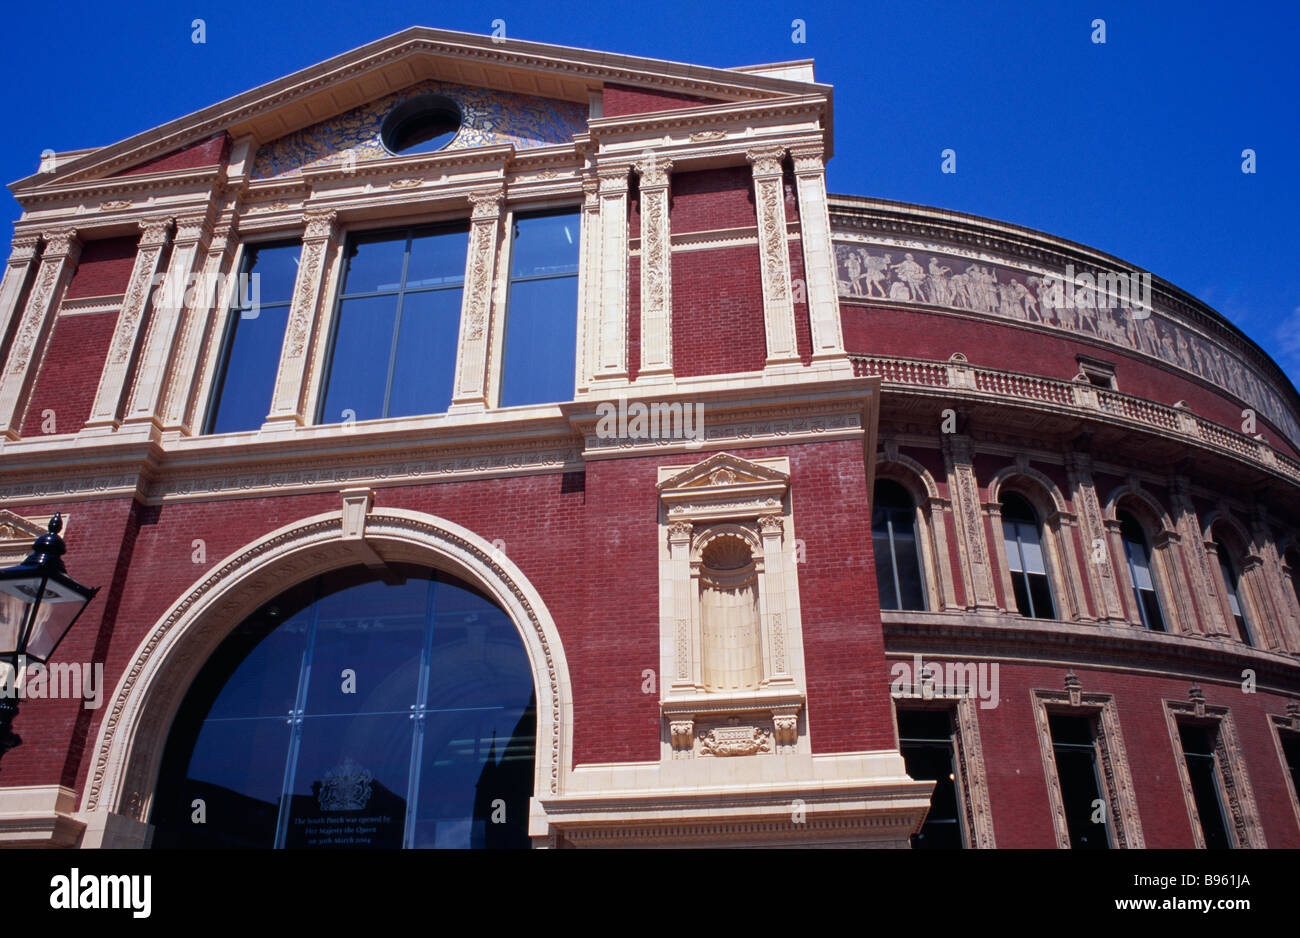 ENGLAND London Kensington. Die Royal Albert Hall. Außenansicht des Eingangs Süd Veranda. Stockfoto